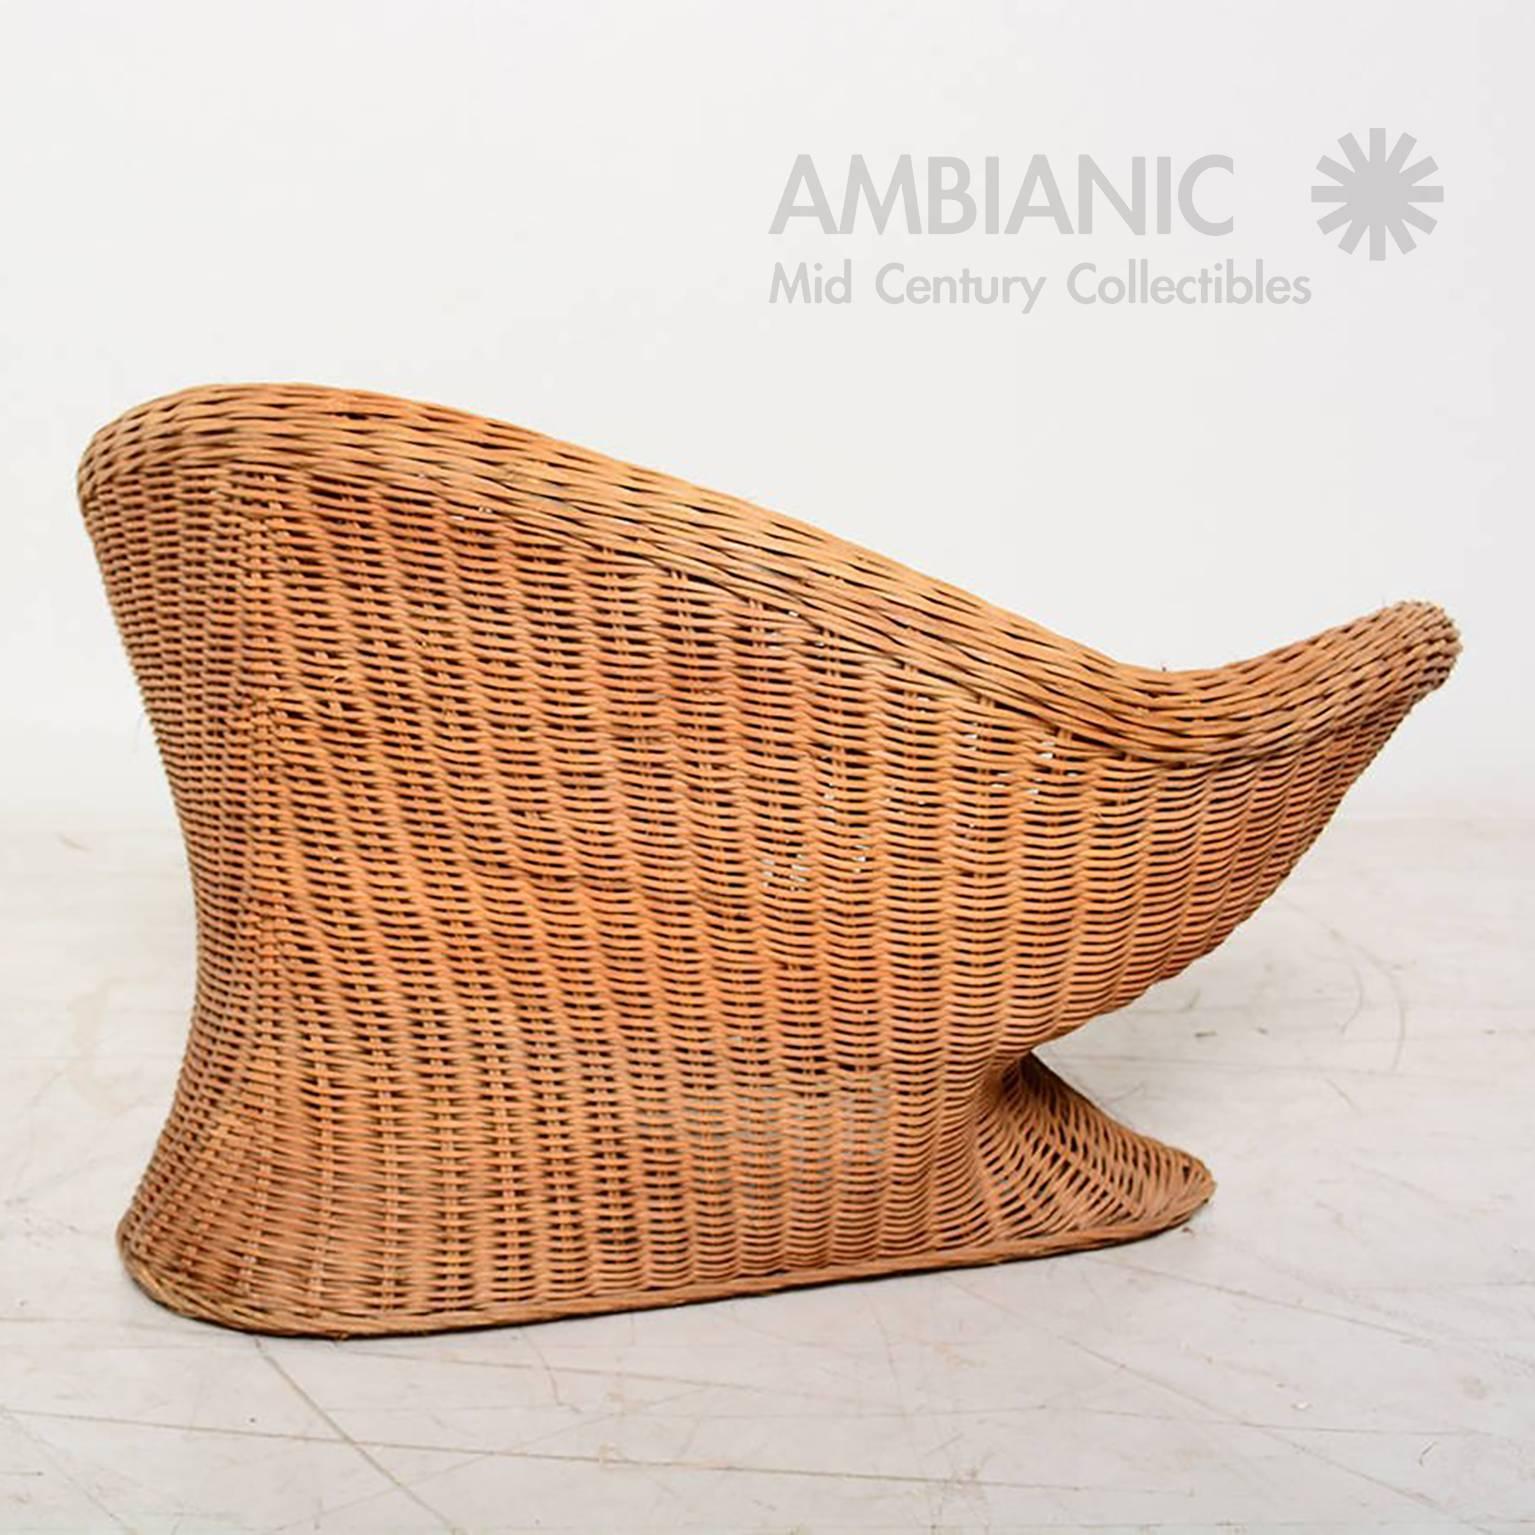 Mid-Century Modern Mid Century Modern Italian Wicker Chair